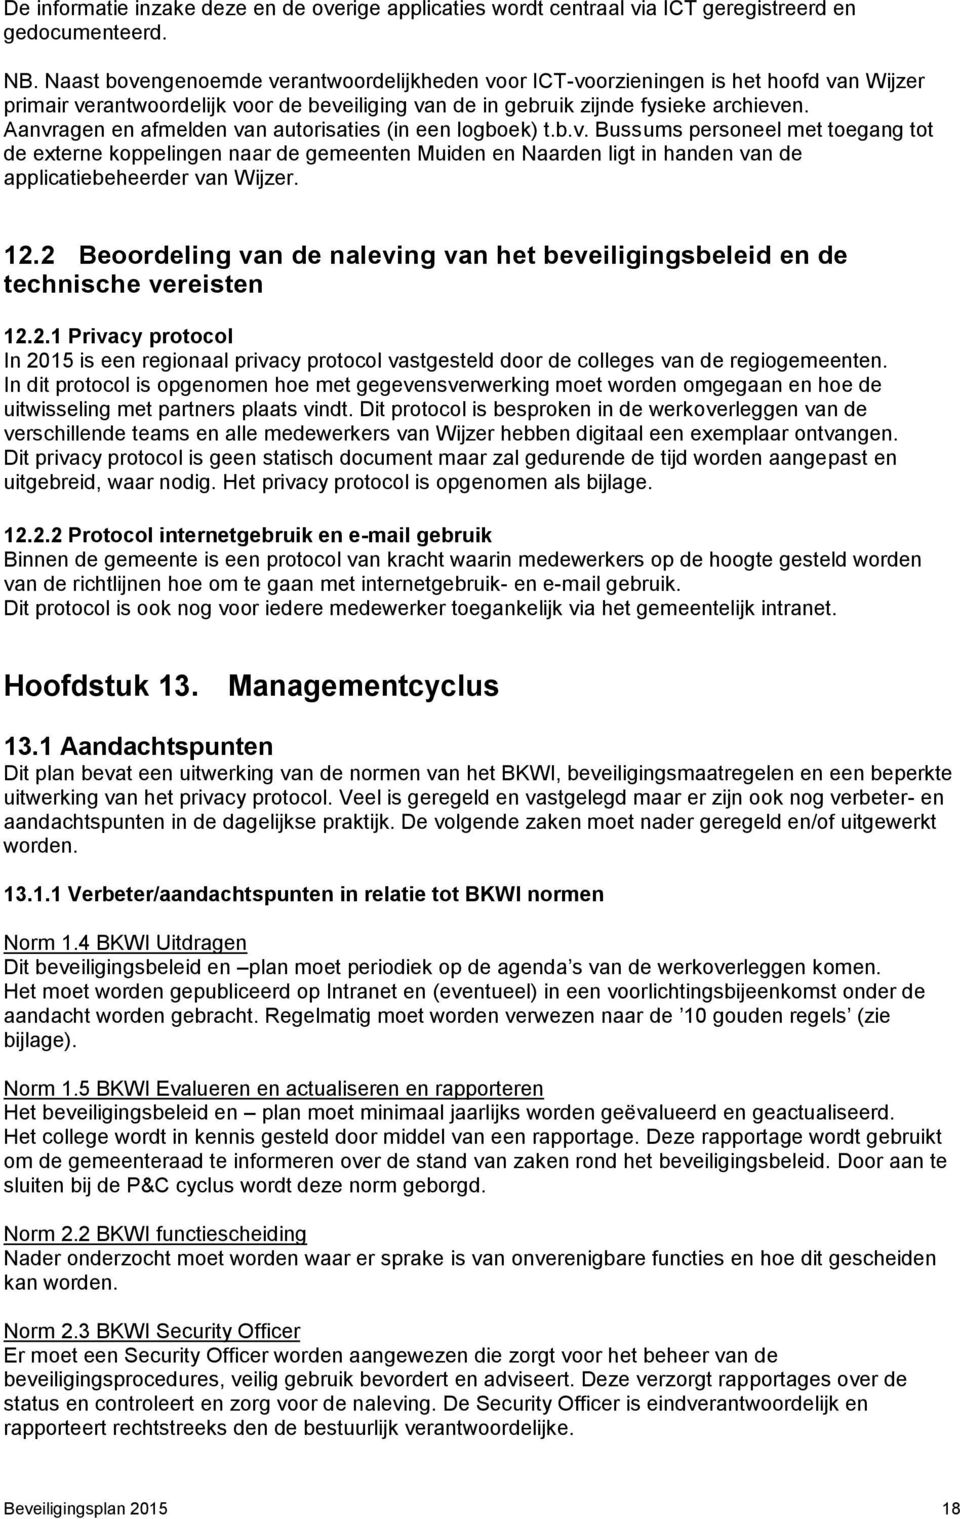 Aanvragen en afmelden van autorisaties (in een logboek) t.b.v. Bussums personeel met toegang tot de externe koppelingen naar de gemeenten Muiden en Naarden ligt in handen van de applicatiebeheerder van Wijzer.